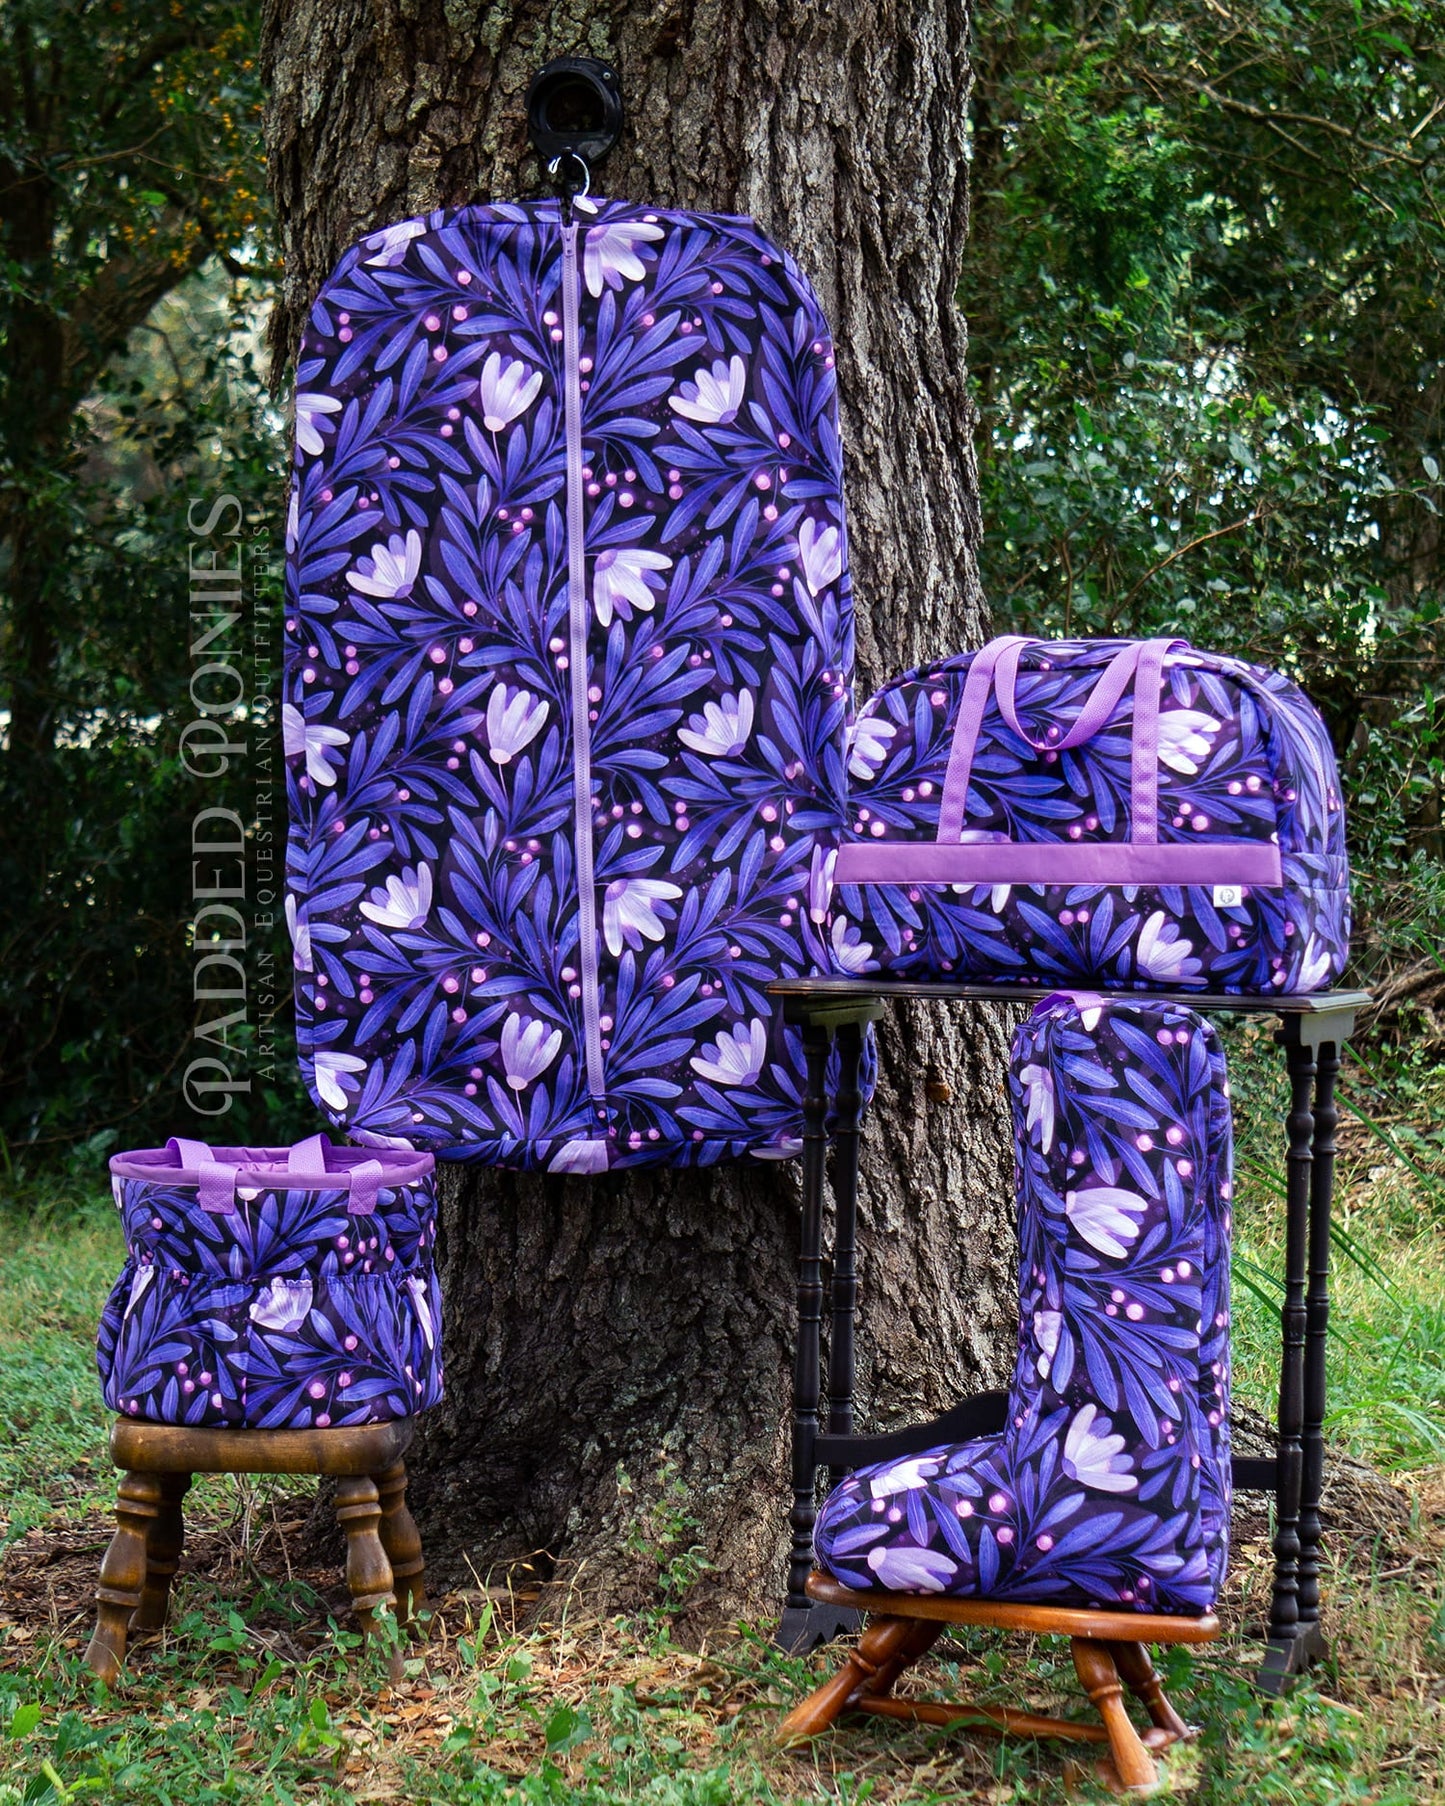 Custom Purple Moonflowers Weekender Tote Bag